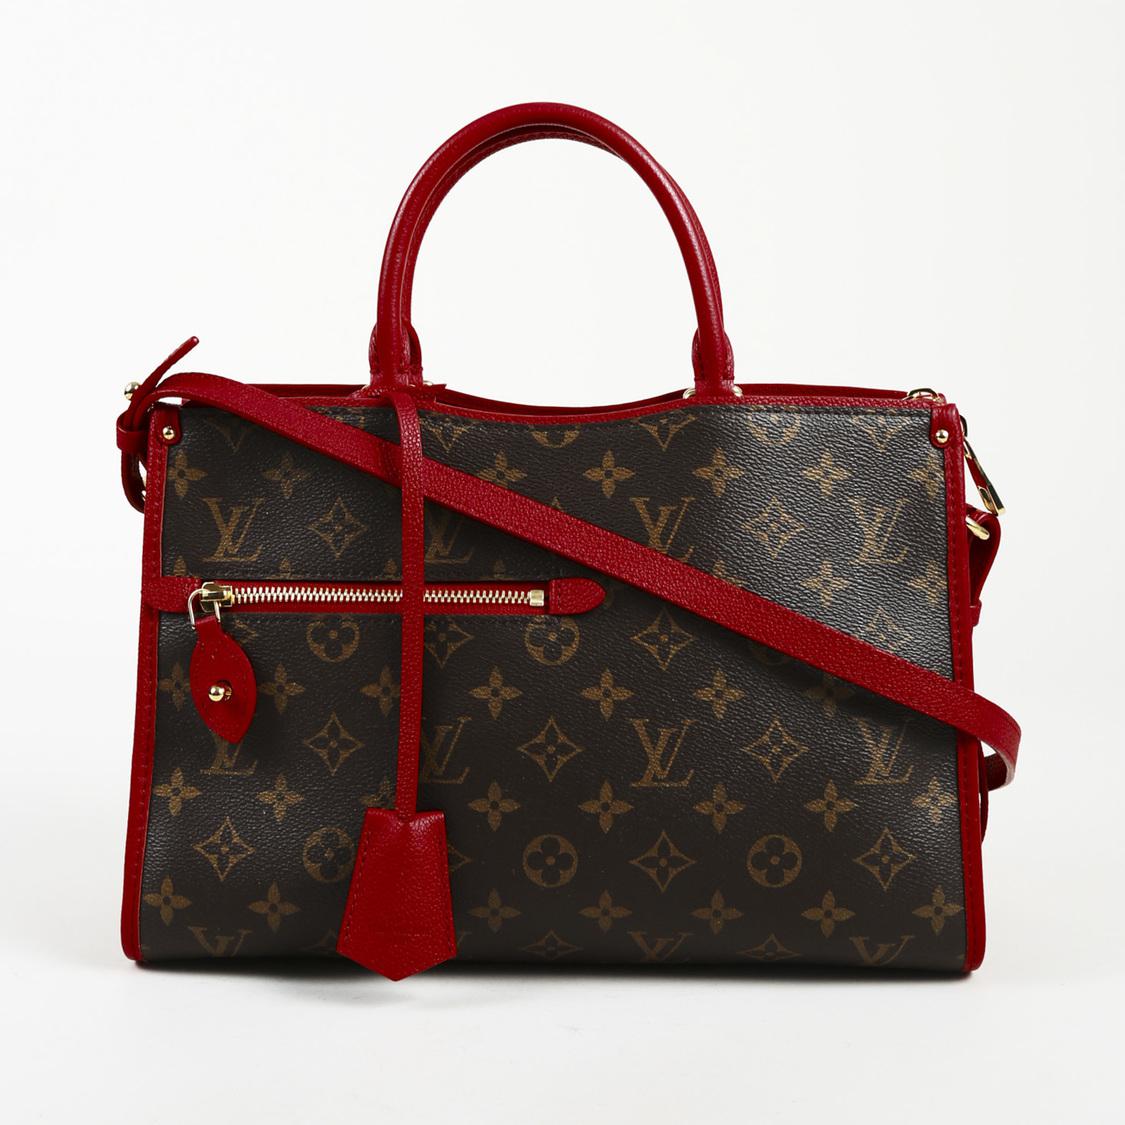 Lyst - Louis Vuitton Popincourt Red Cloth Handbag in Red - Save 7%